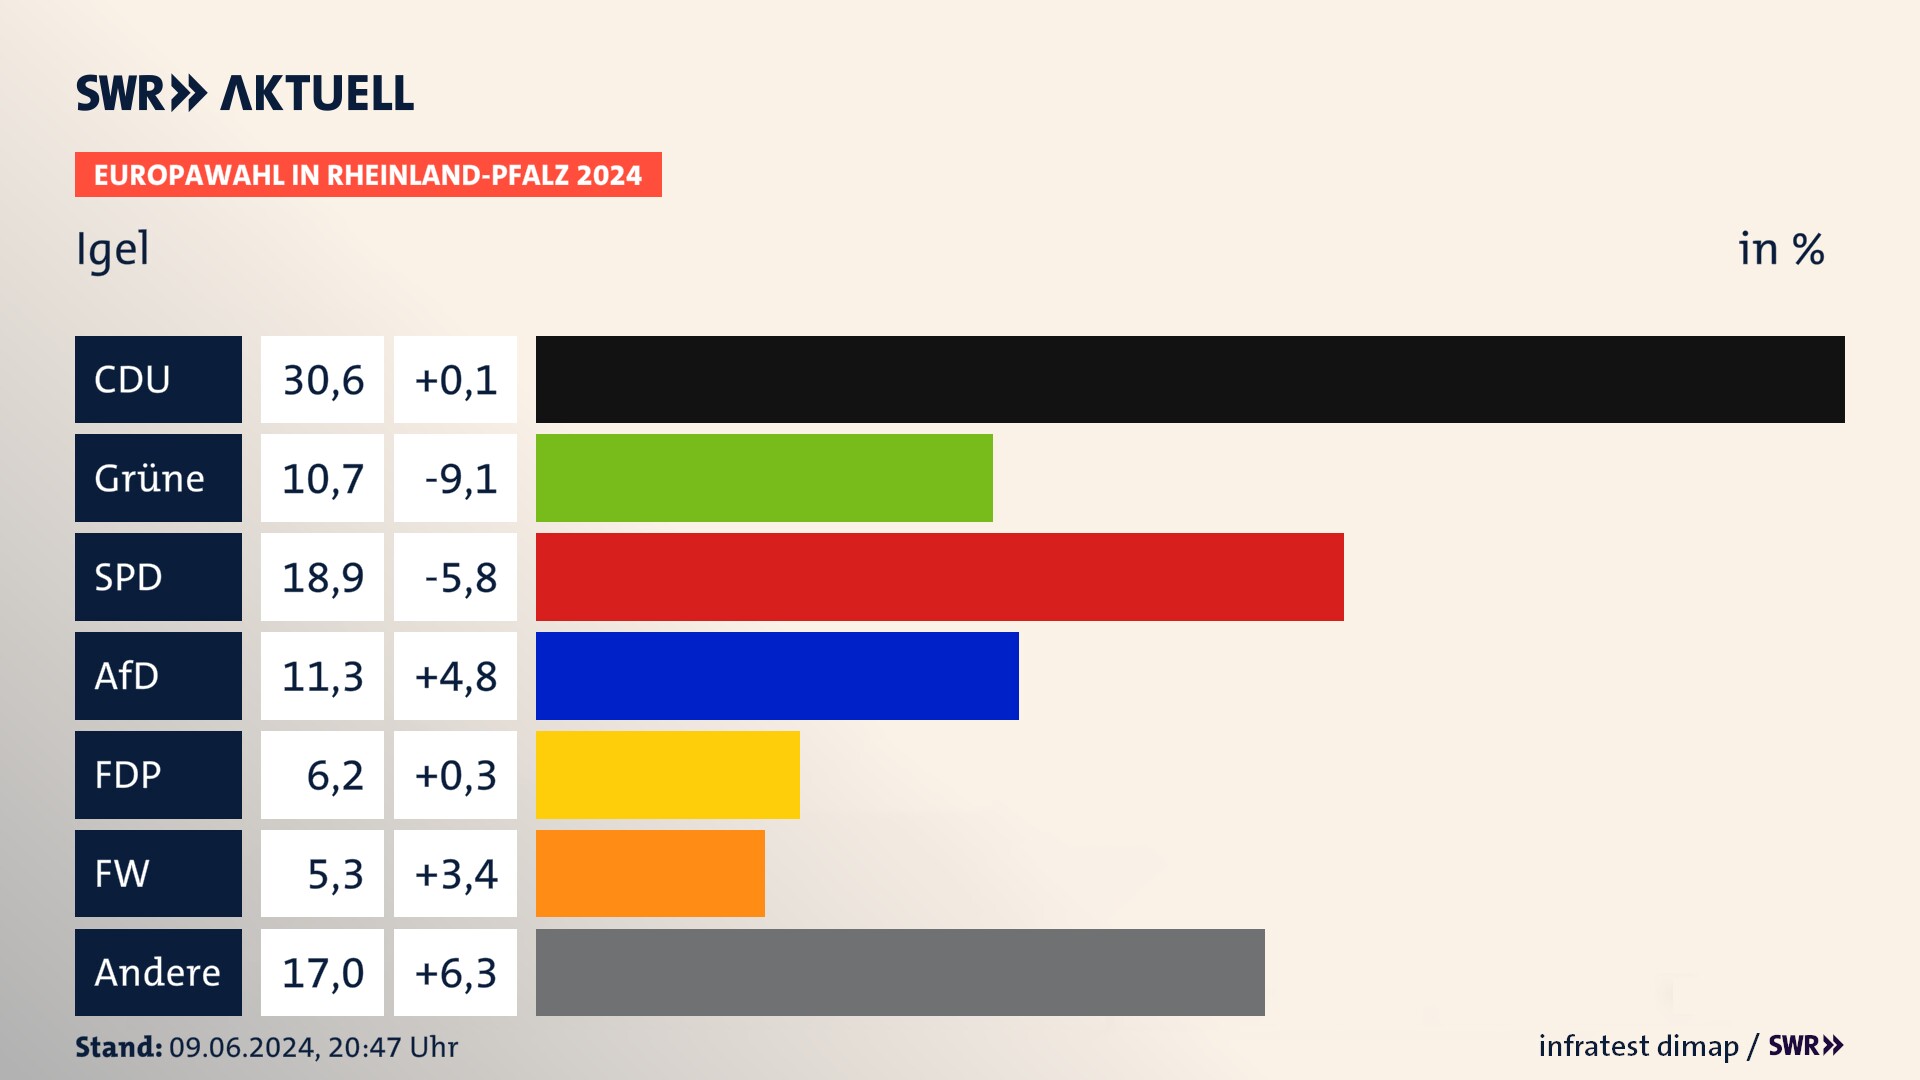 Europawahl 2024 Endergebnis Zweitstimme für Igel. In Igel erzielt die CDU 30,6 Prozent der gültigen  Stimmen. Die Grünen landen bei 10,7 Prozent. Die SPD erreicht 18,9 Prozent. Die AfD kommt auf 11,3 Prozent. Die FDP landet bei 6,2 Prozent. Die Freien Wähler erreichen 5,3 Prozent.